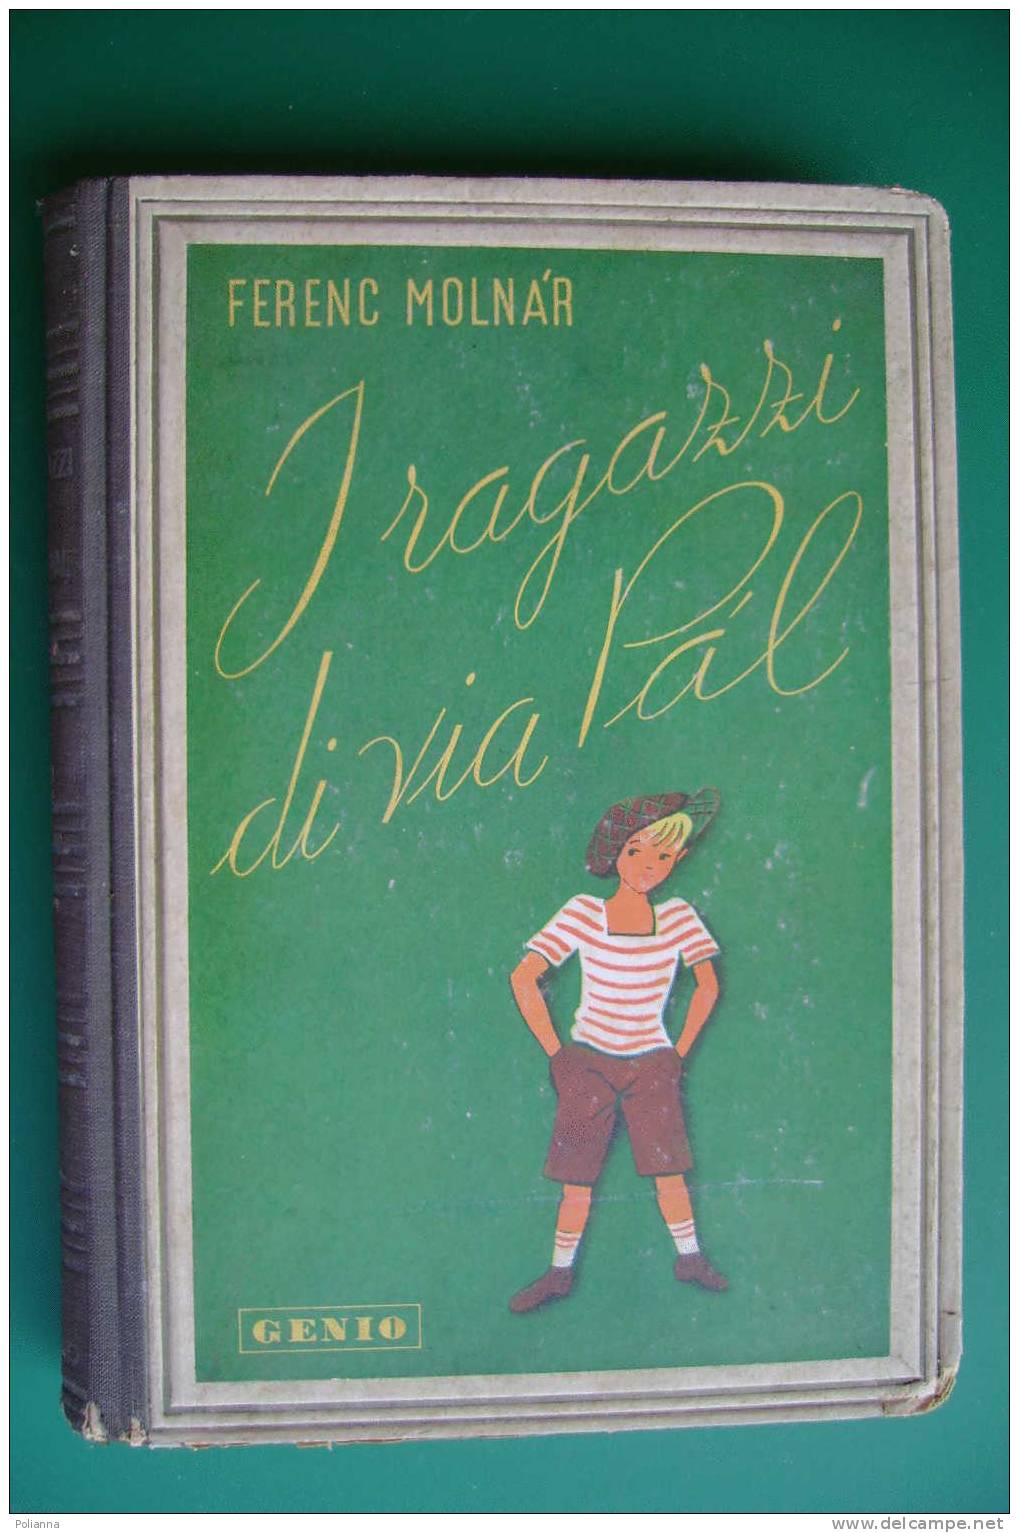 PDC/40 Ferenc Molnar I RAGAZZI DI VIA PAL Genio 1945/illustrato - Old